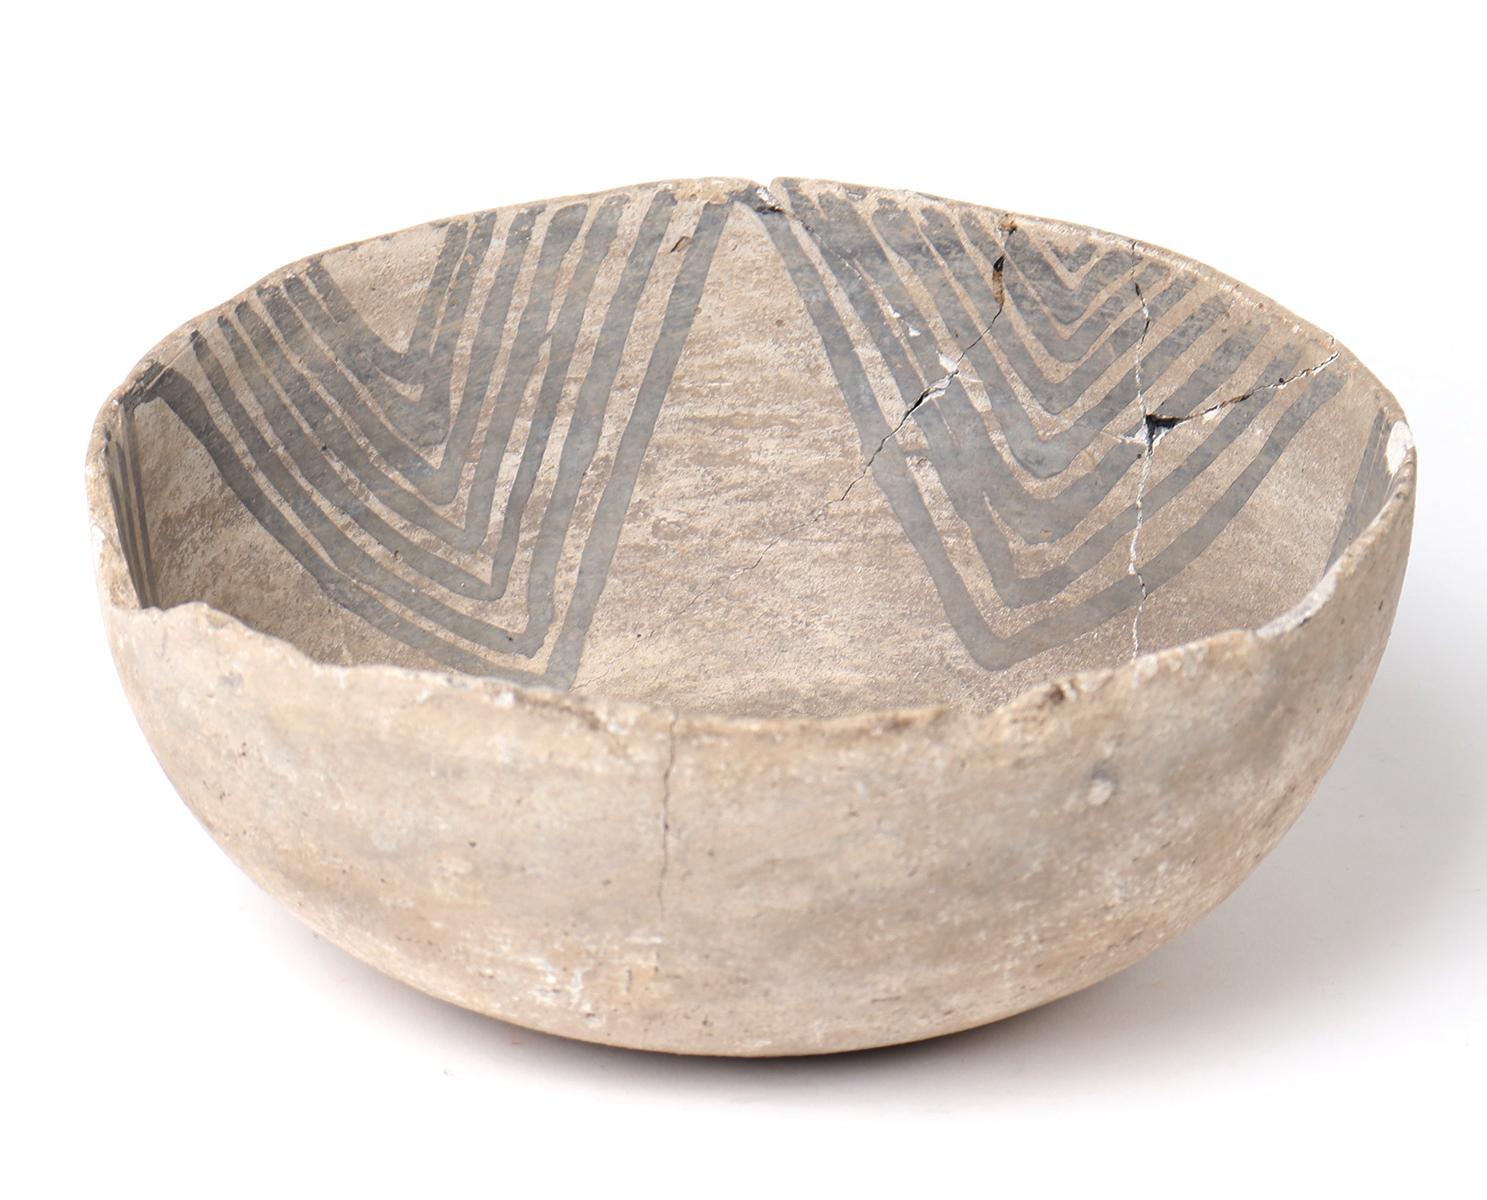 Pre-Historic Anasazi Pueblo Painted Bowl, Pueblo II 900 CE-1150 CE